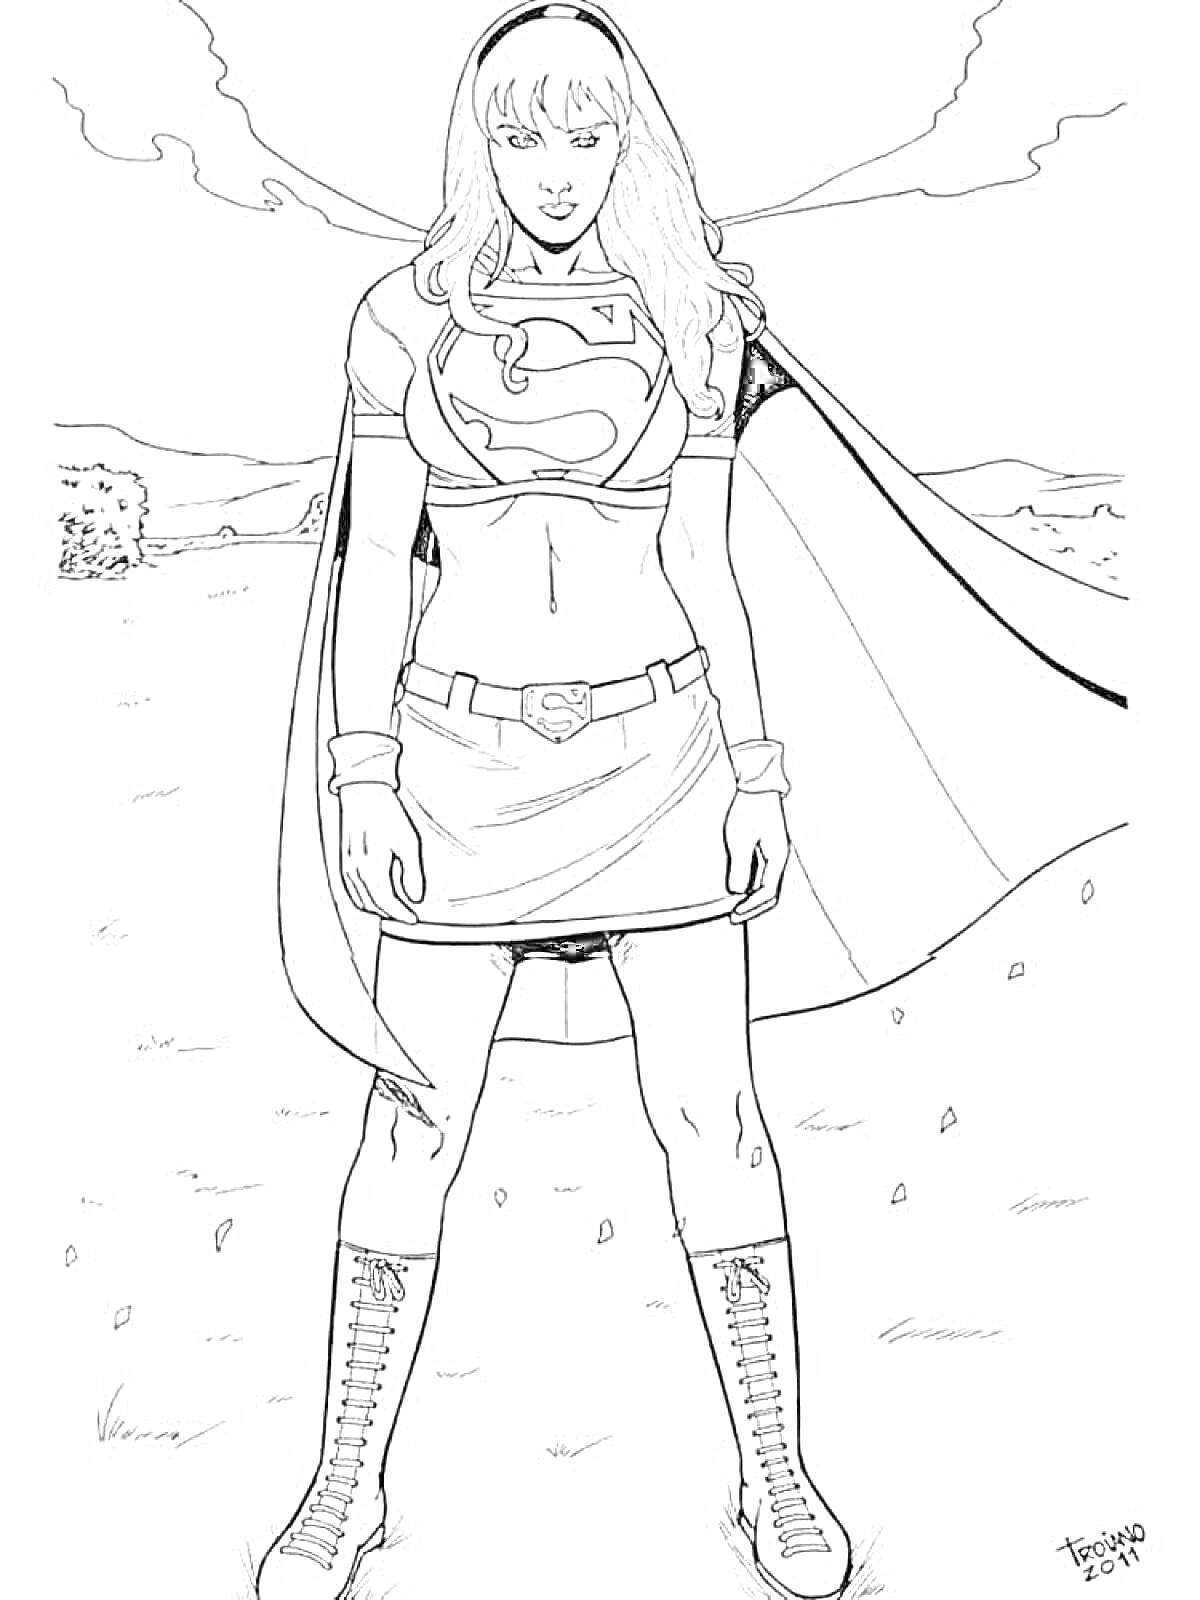 Супергерл сcape и эмблема Супермена на груди в поле